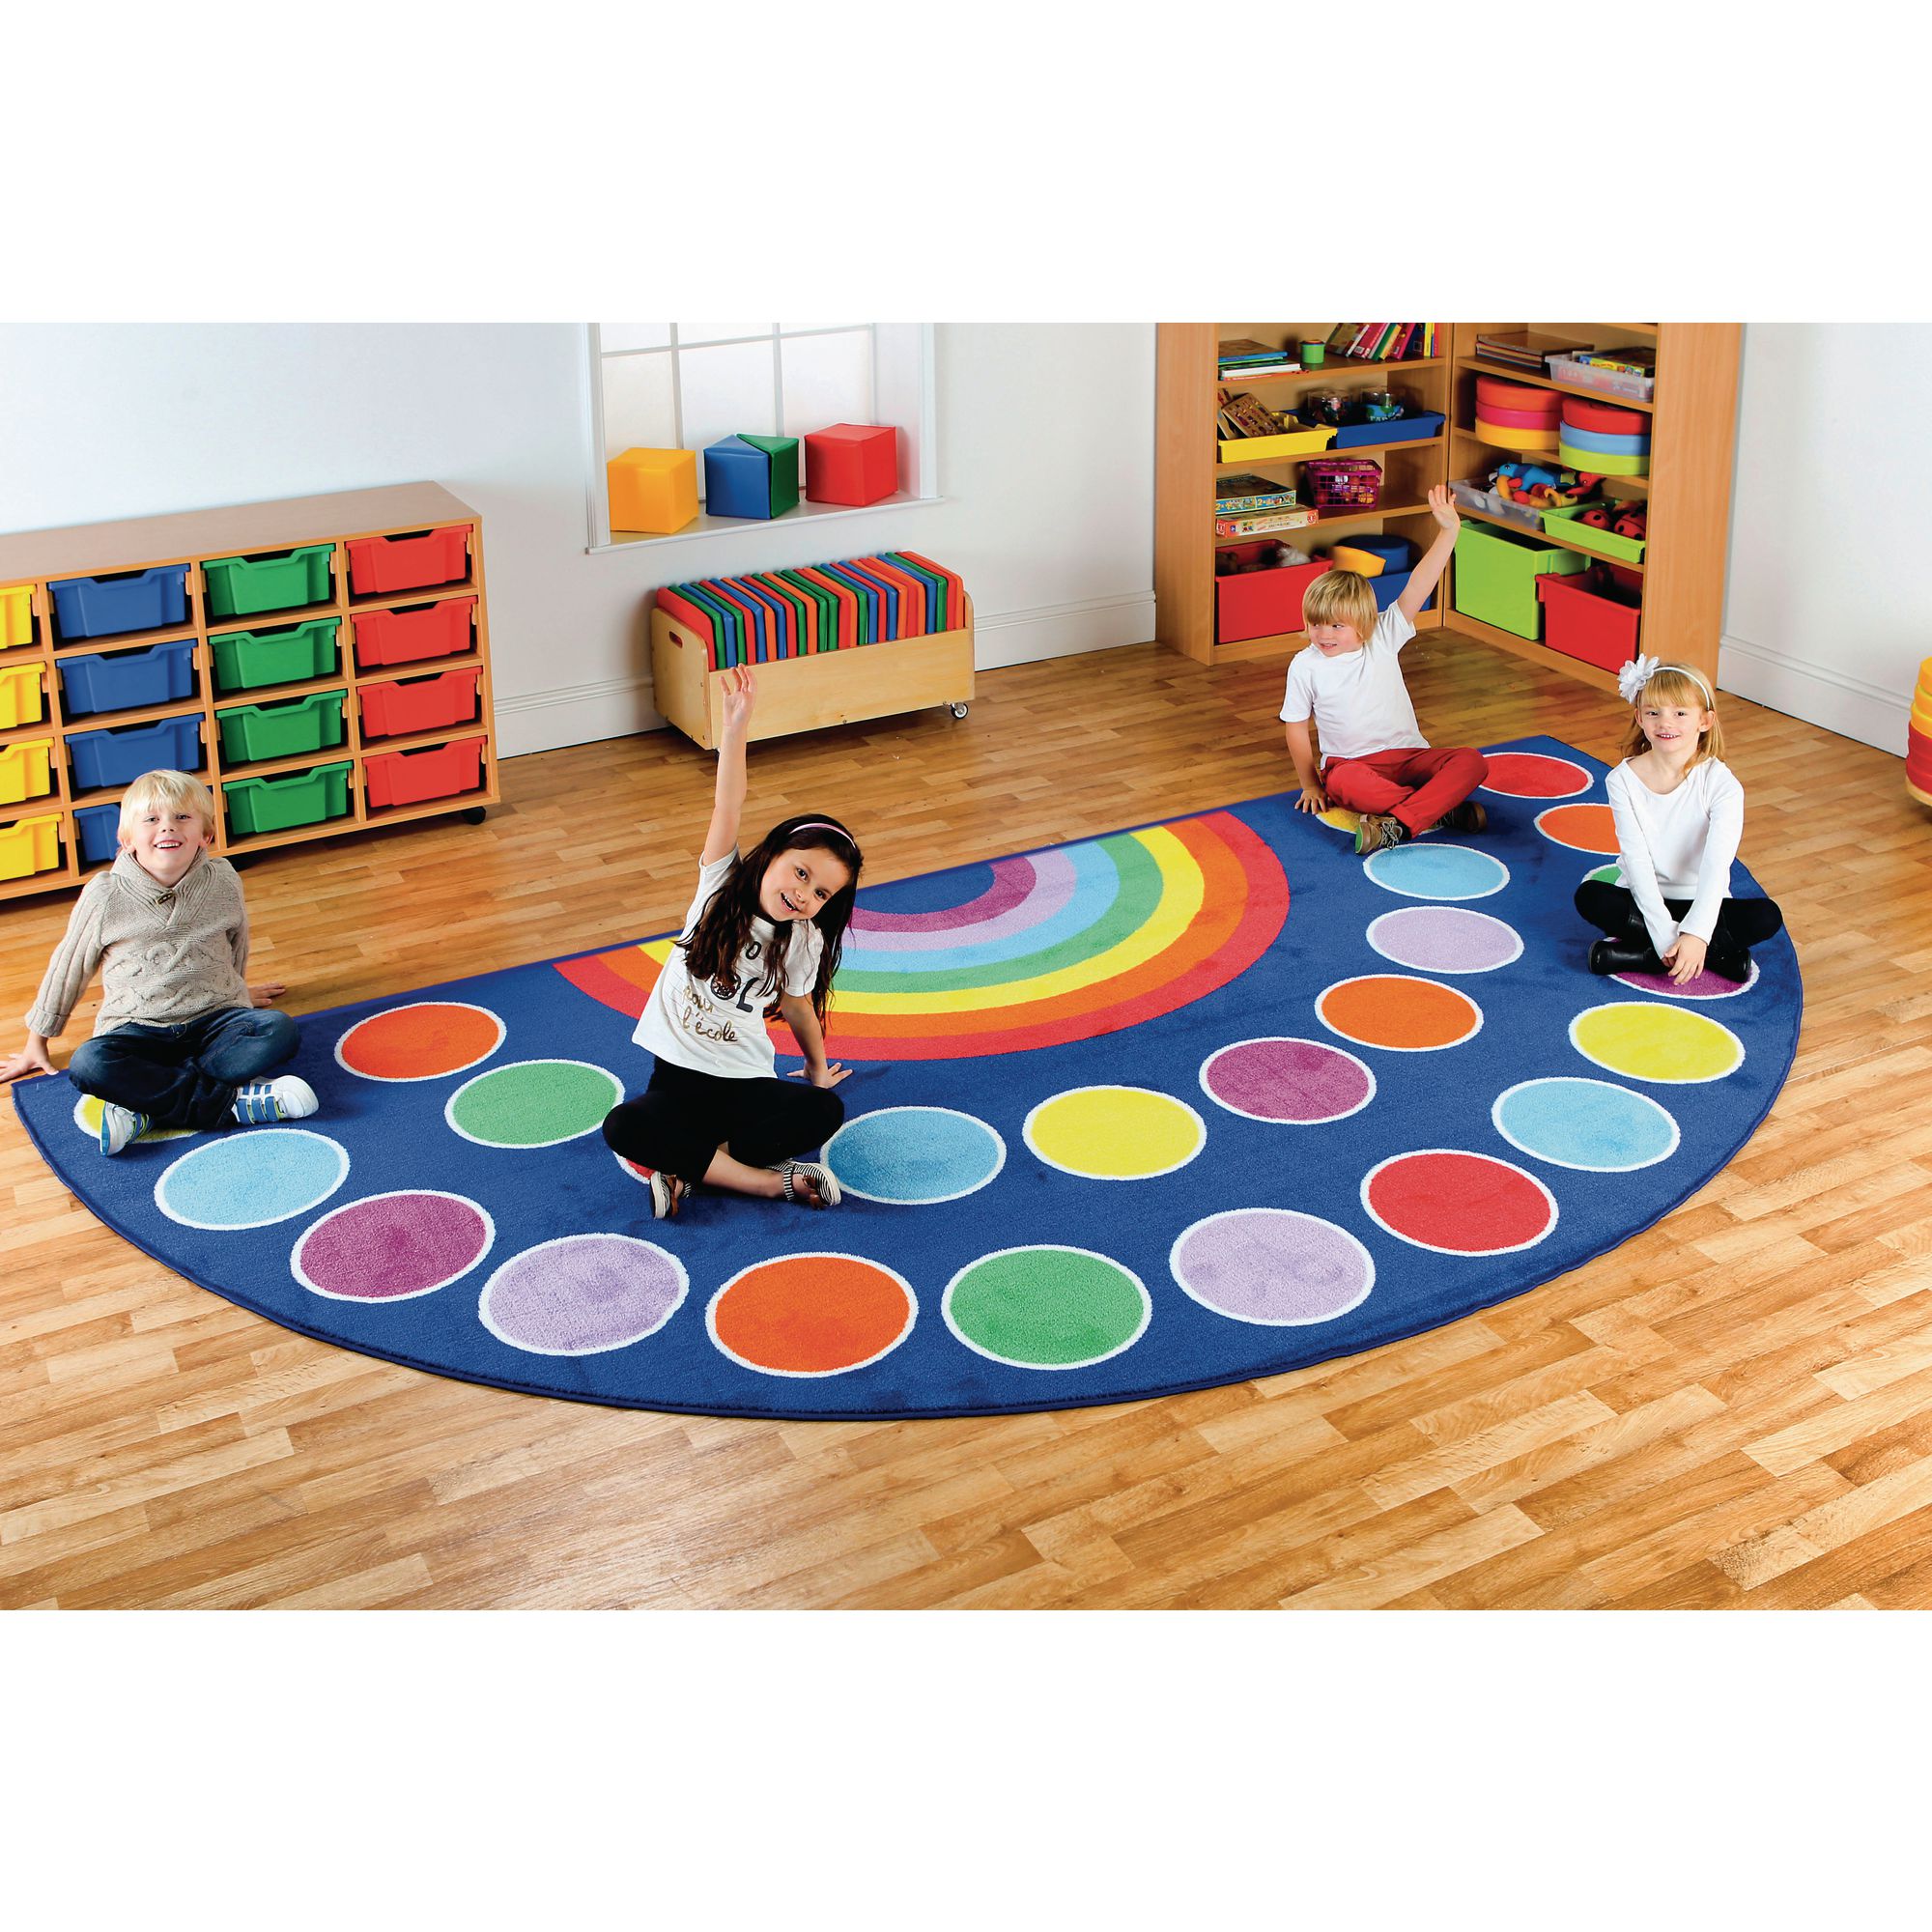 Hc1208661 Rainbow Semi Circle Carpet, Large Semi Circle Area Rugs